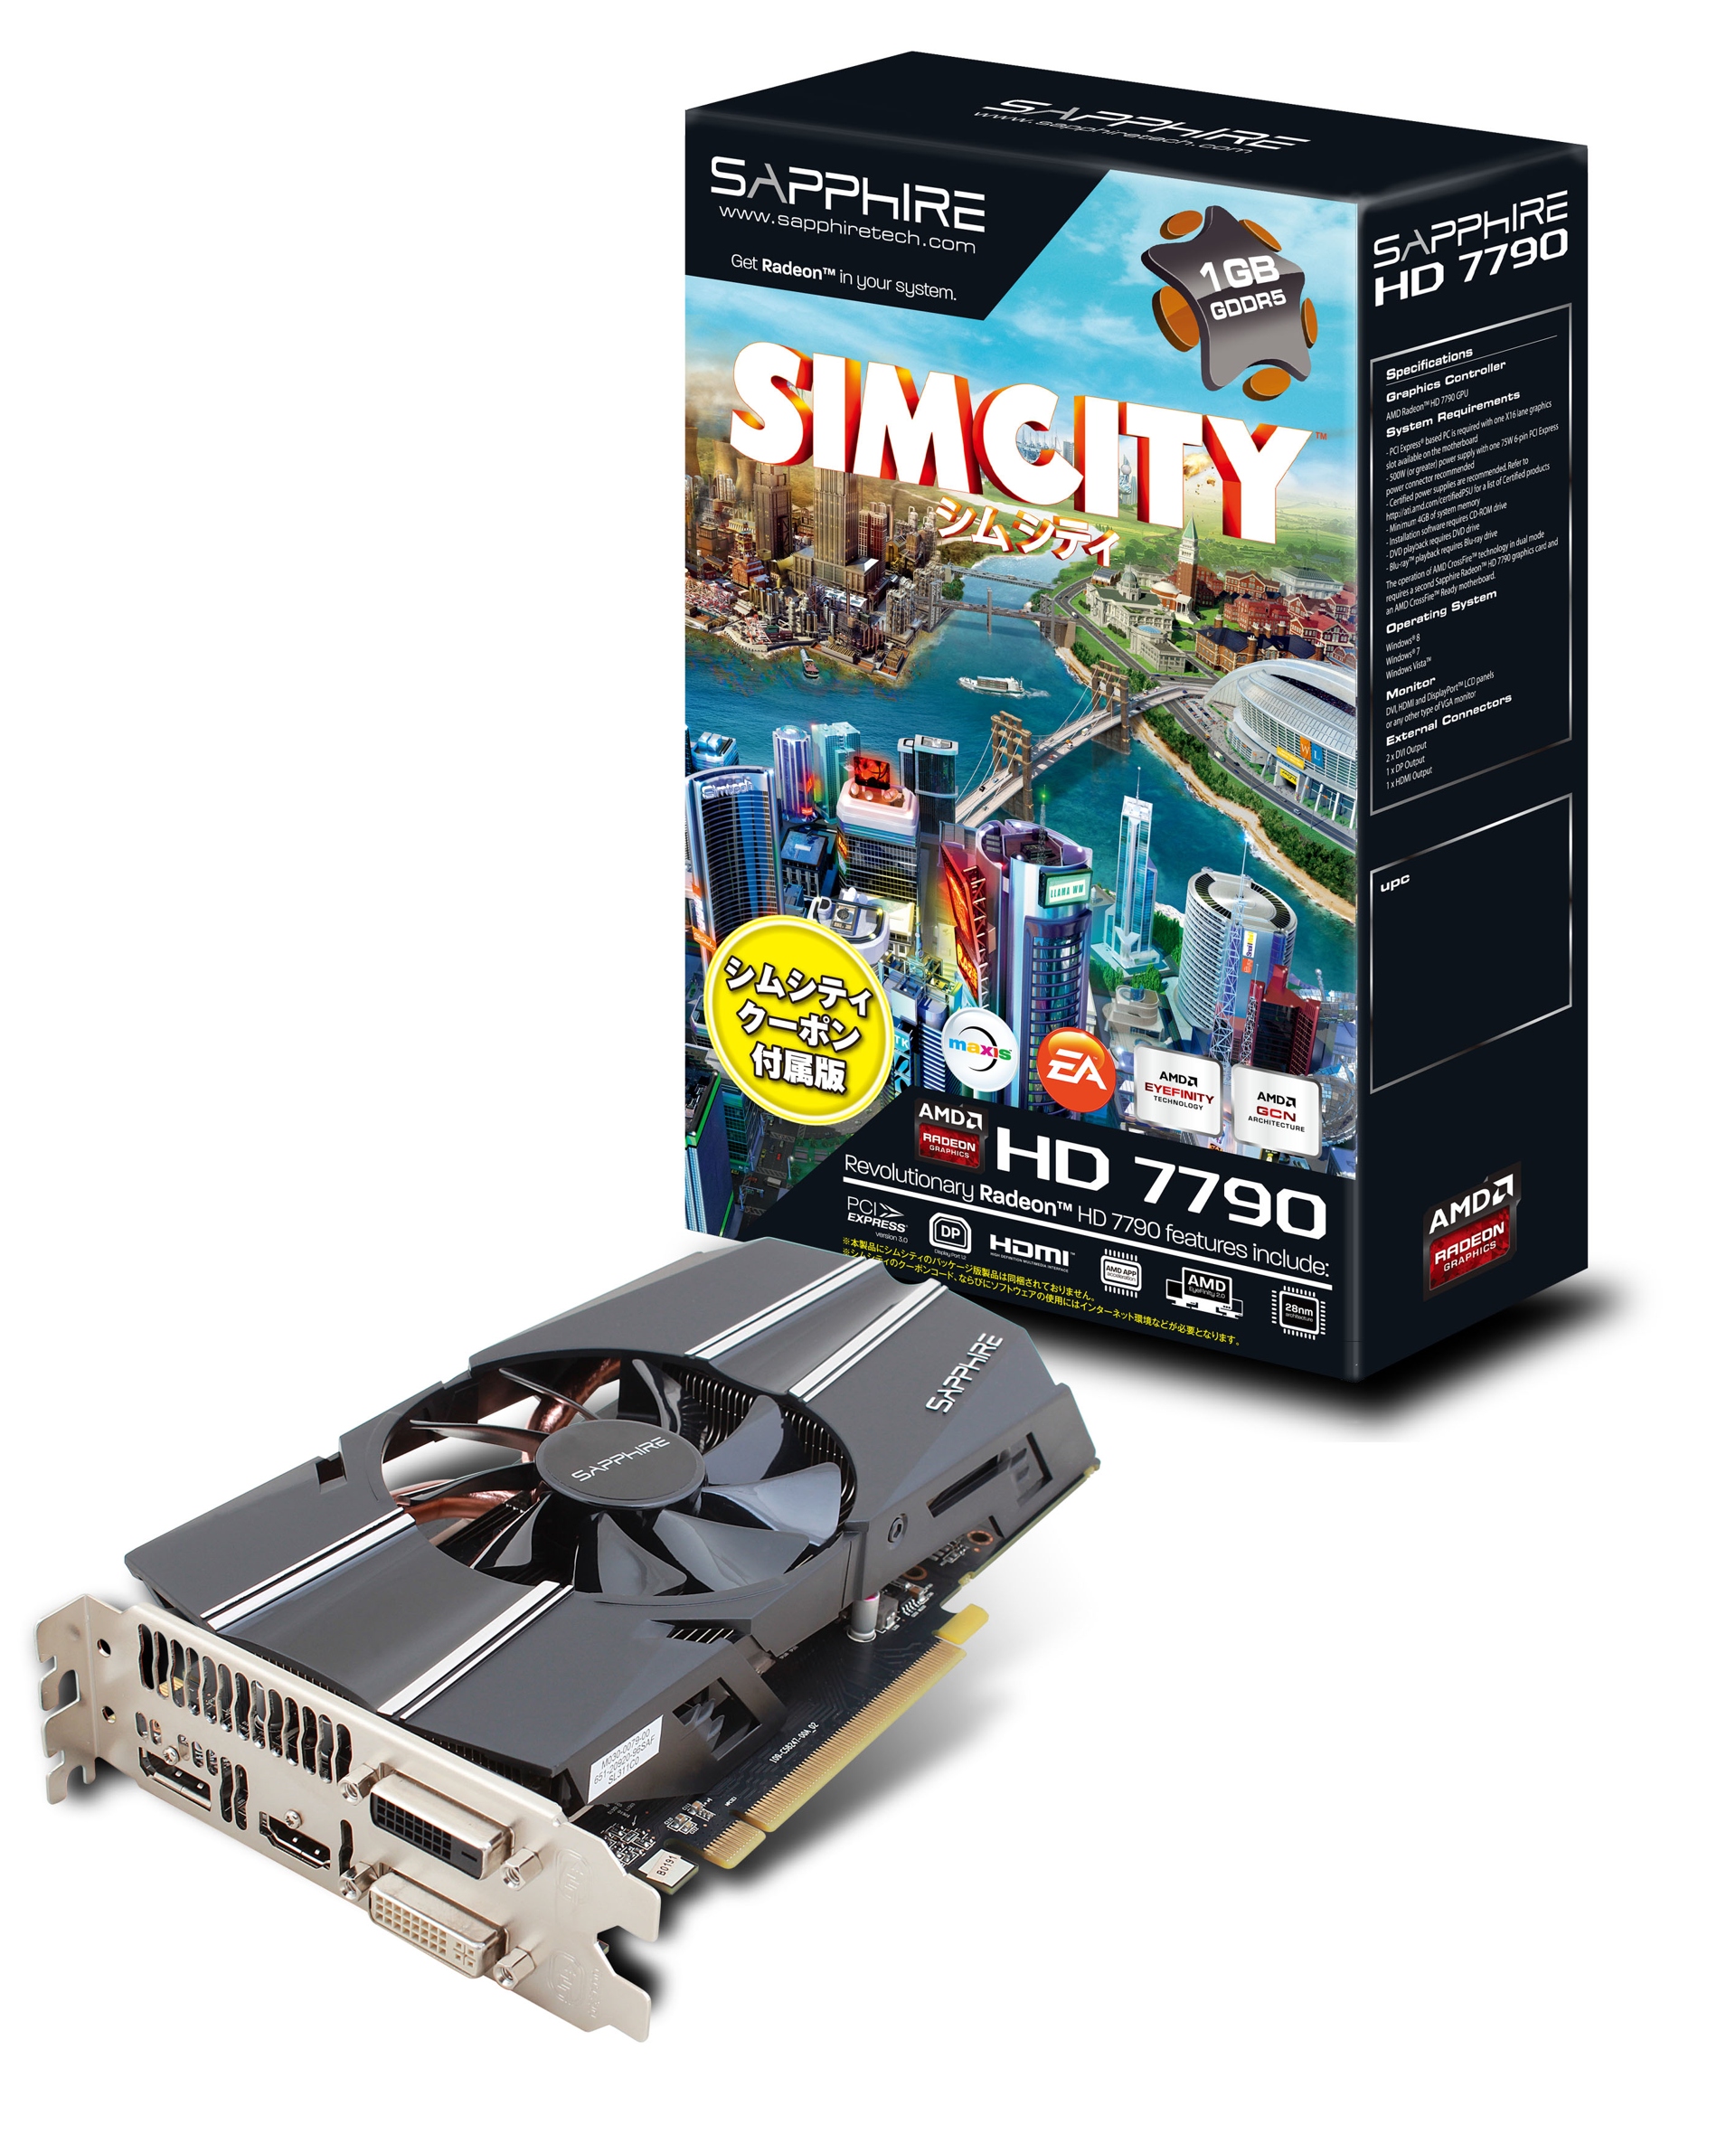 Immagine pubblicata in relazione al seguente contenuto: Sapphire introduce la video card Radeon HD 7790 SimCity Edition | Nome immagine: news19476_HD7790_SIMCITY_1GBGDDR5_2.jpg